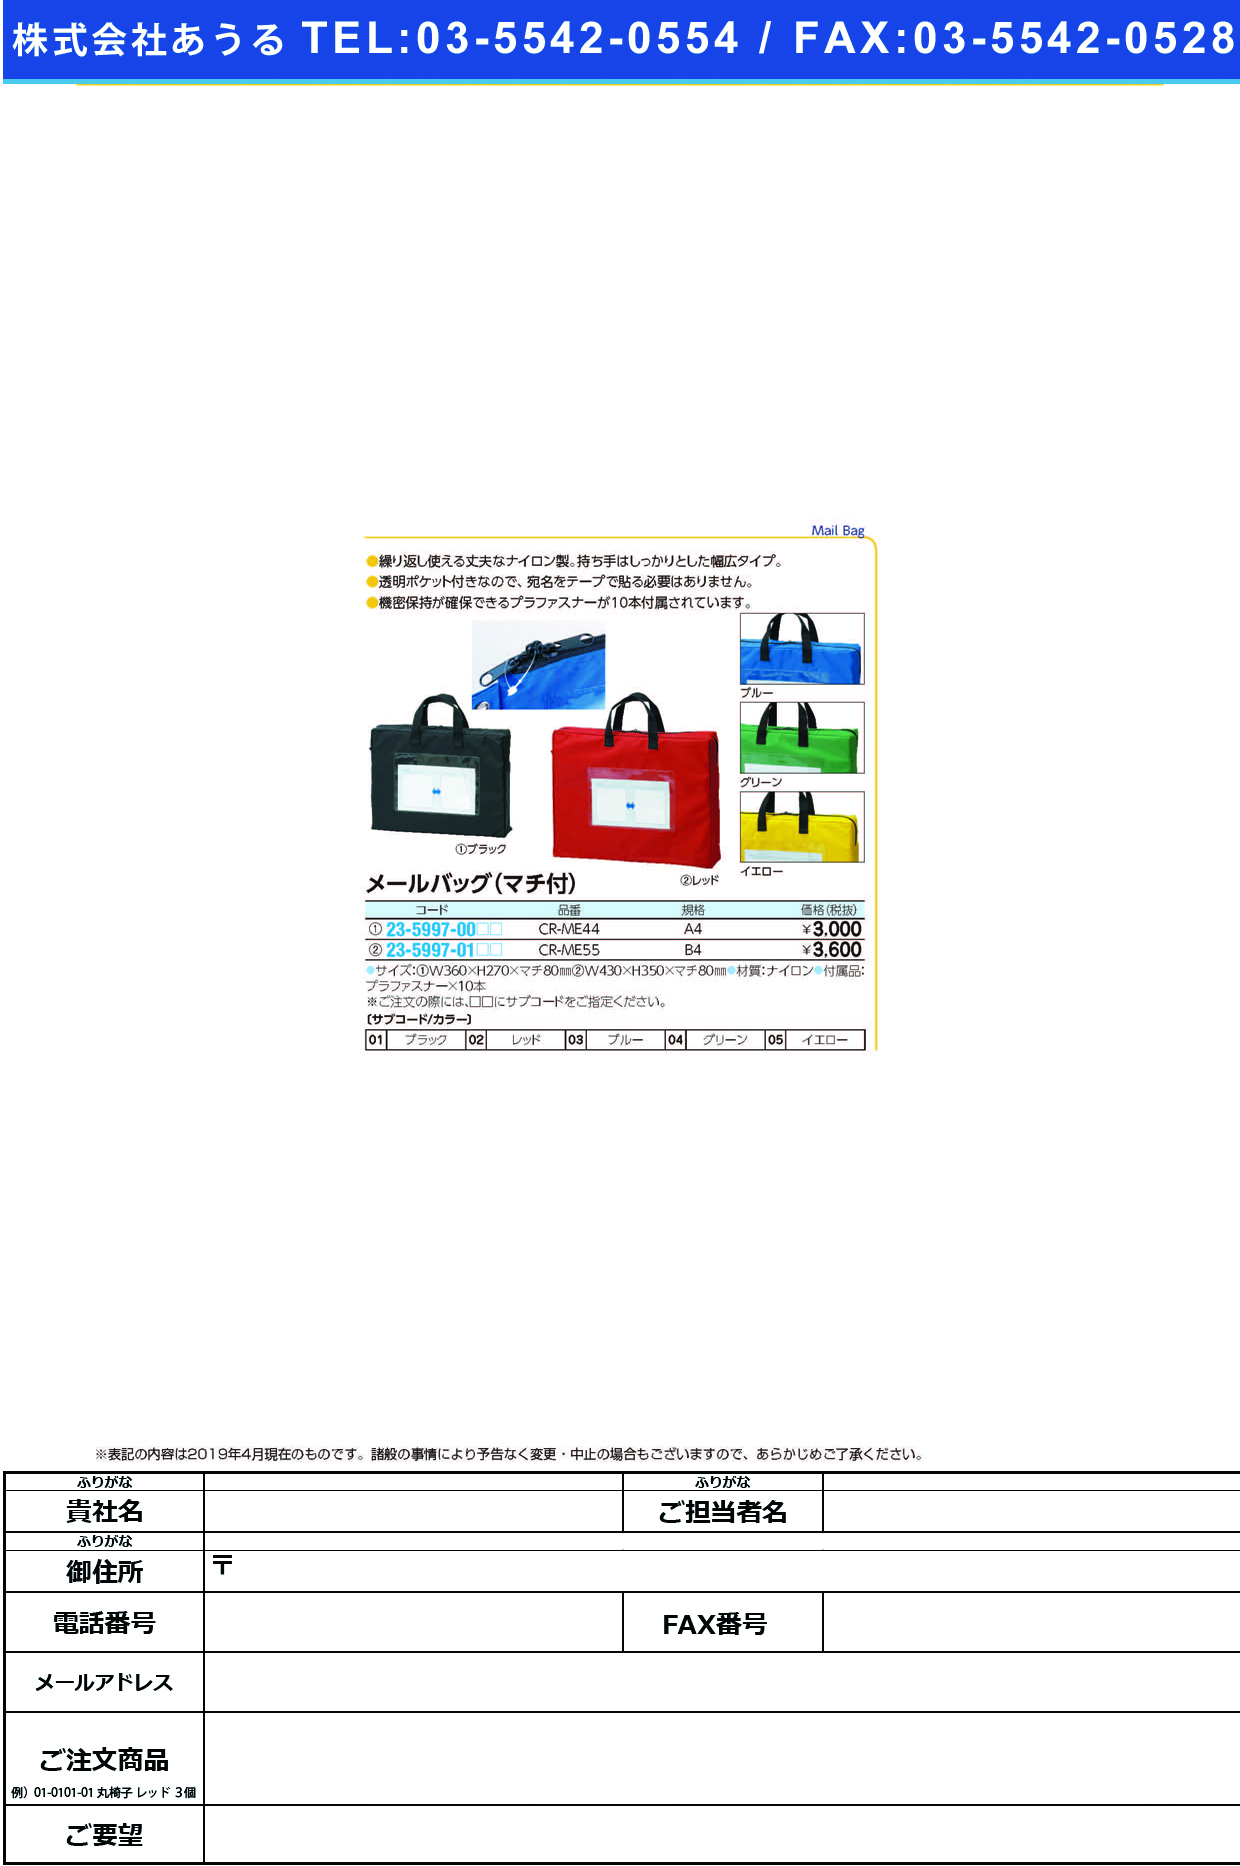 (23-5997-01)メールバッグ（マチ付） CR-ME55(B4) ﾒｰﾙﾊﾞｯｸﾞ(ﾏﾁﾂｷ) ブラック【1個単位】【2019年カタログ商品】